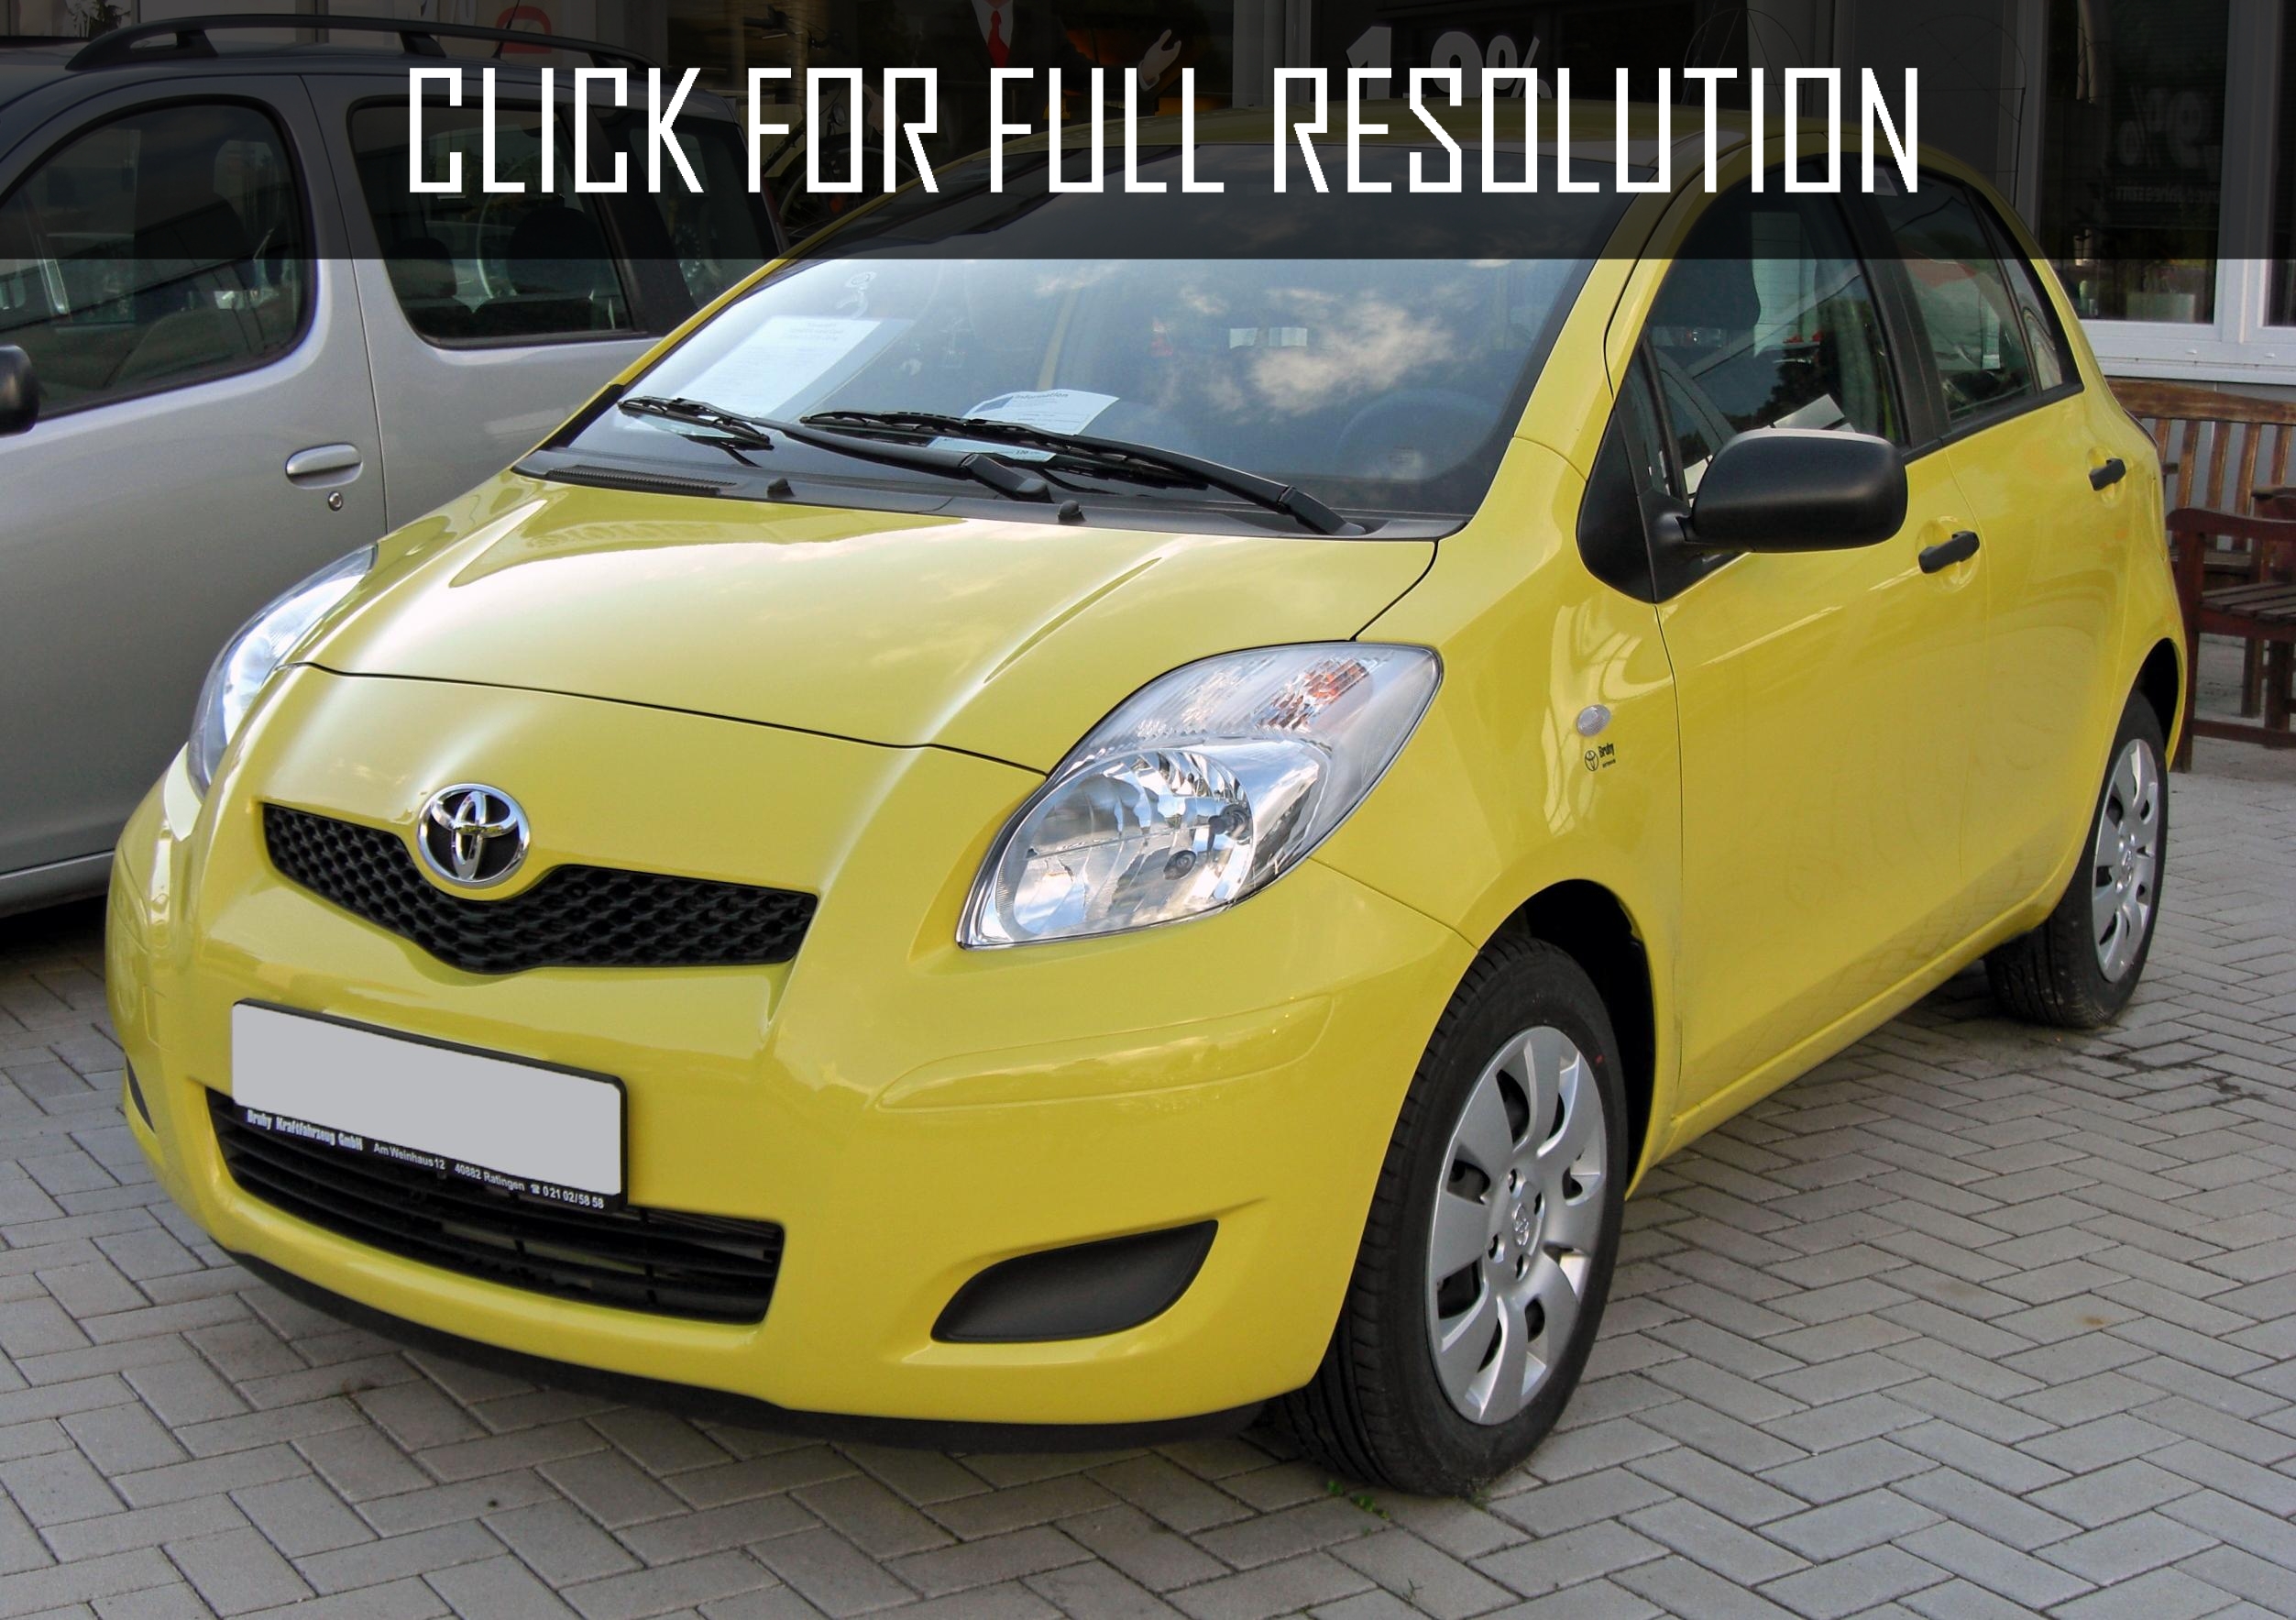 Toyota Yaris Yellow